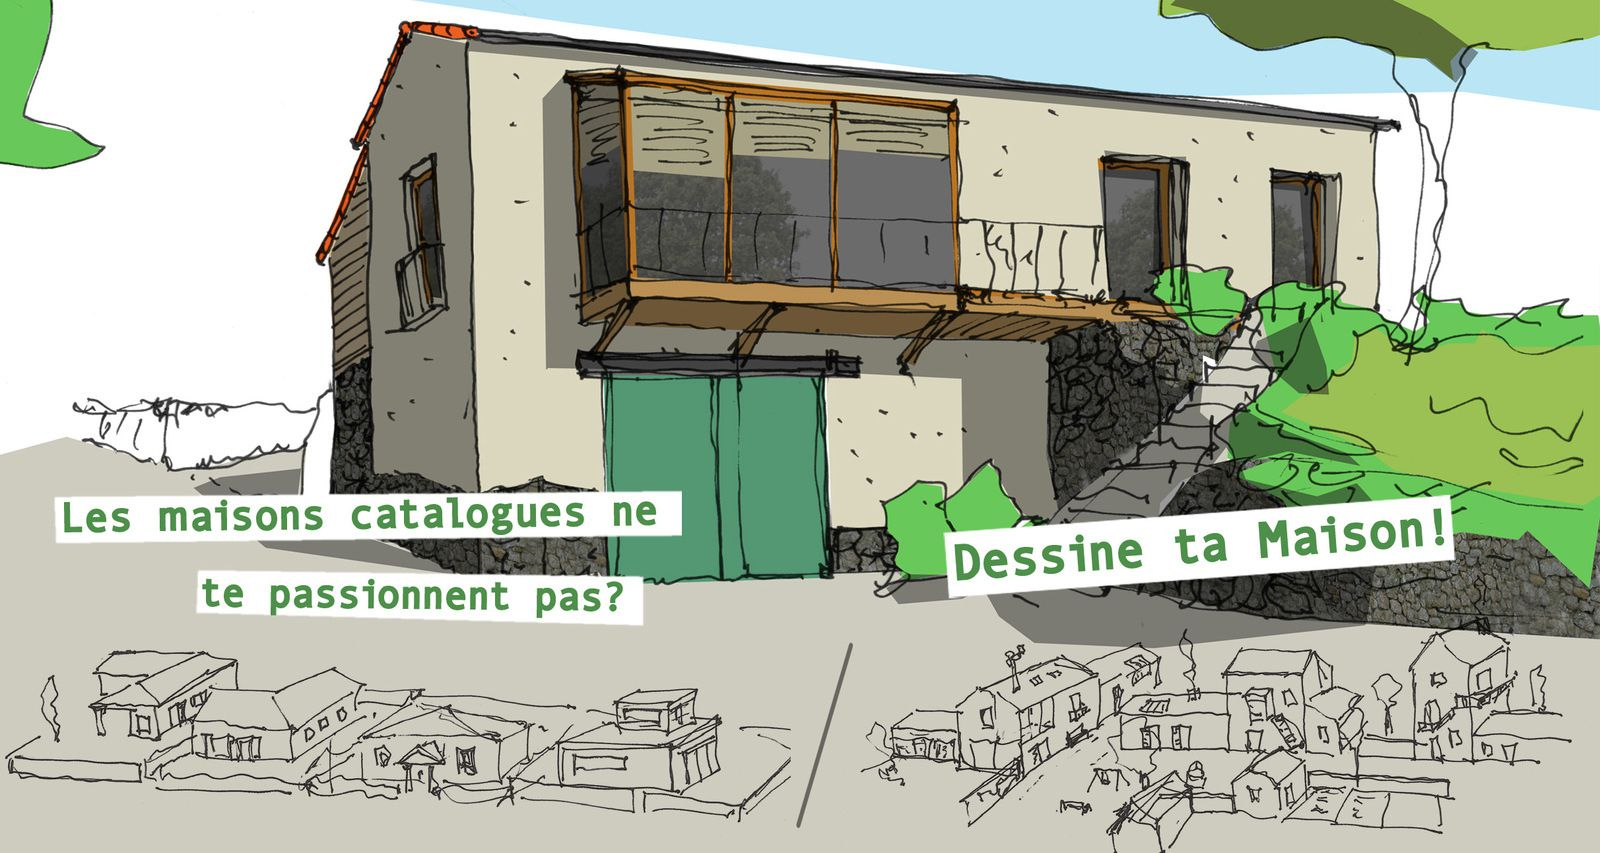 Se Former Pour Dessiner Sa Maison ! - Autoconstruction dedans Didou Dessine Une Maison 